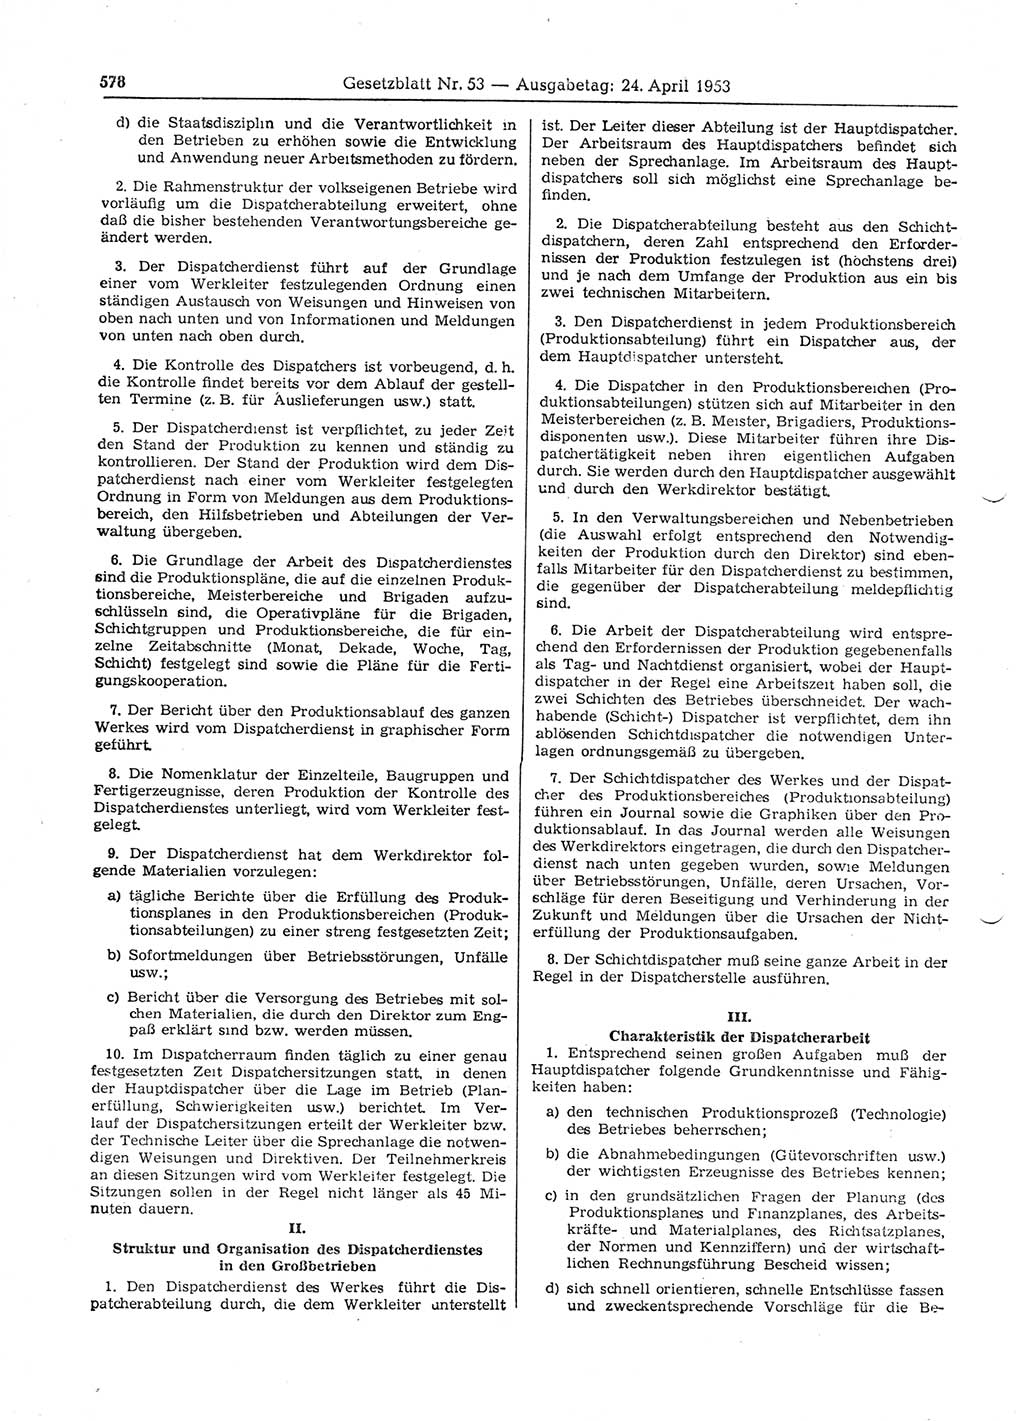 Gesetzblatt (GBl.) der Deutschen Demokratischen Republik (DDR) 1953, Seite 578 (GBl. DDR 1953, S. 578)